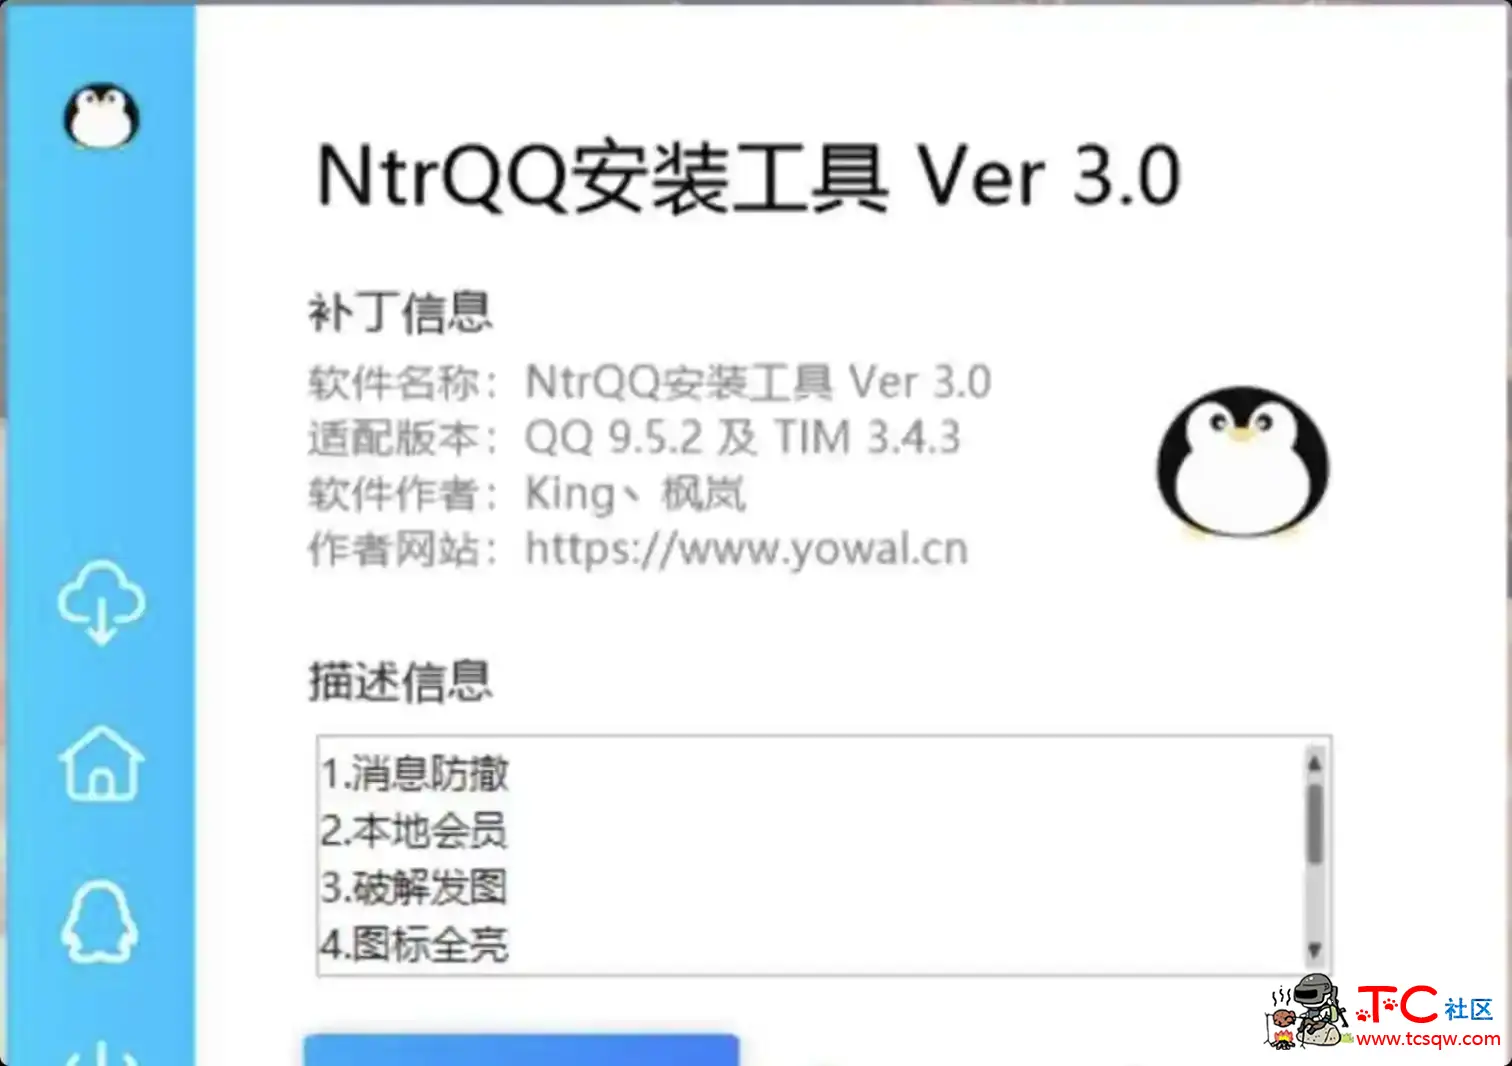 NtrQQ安装工具 Ver 3.0 屠城辅助网www.tcfz1.com7397